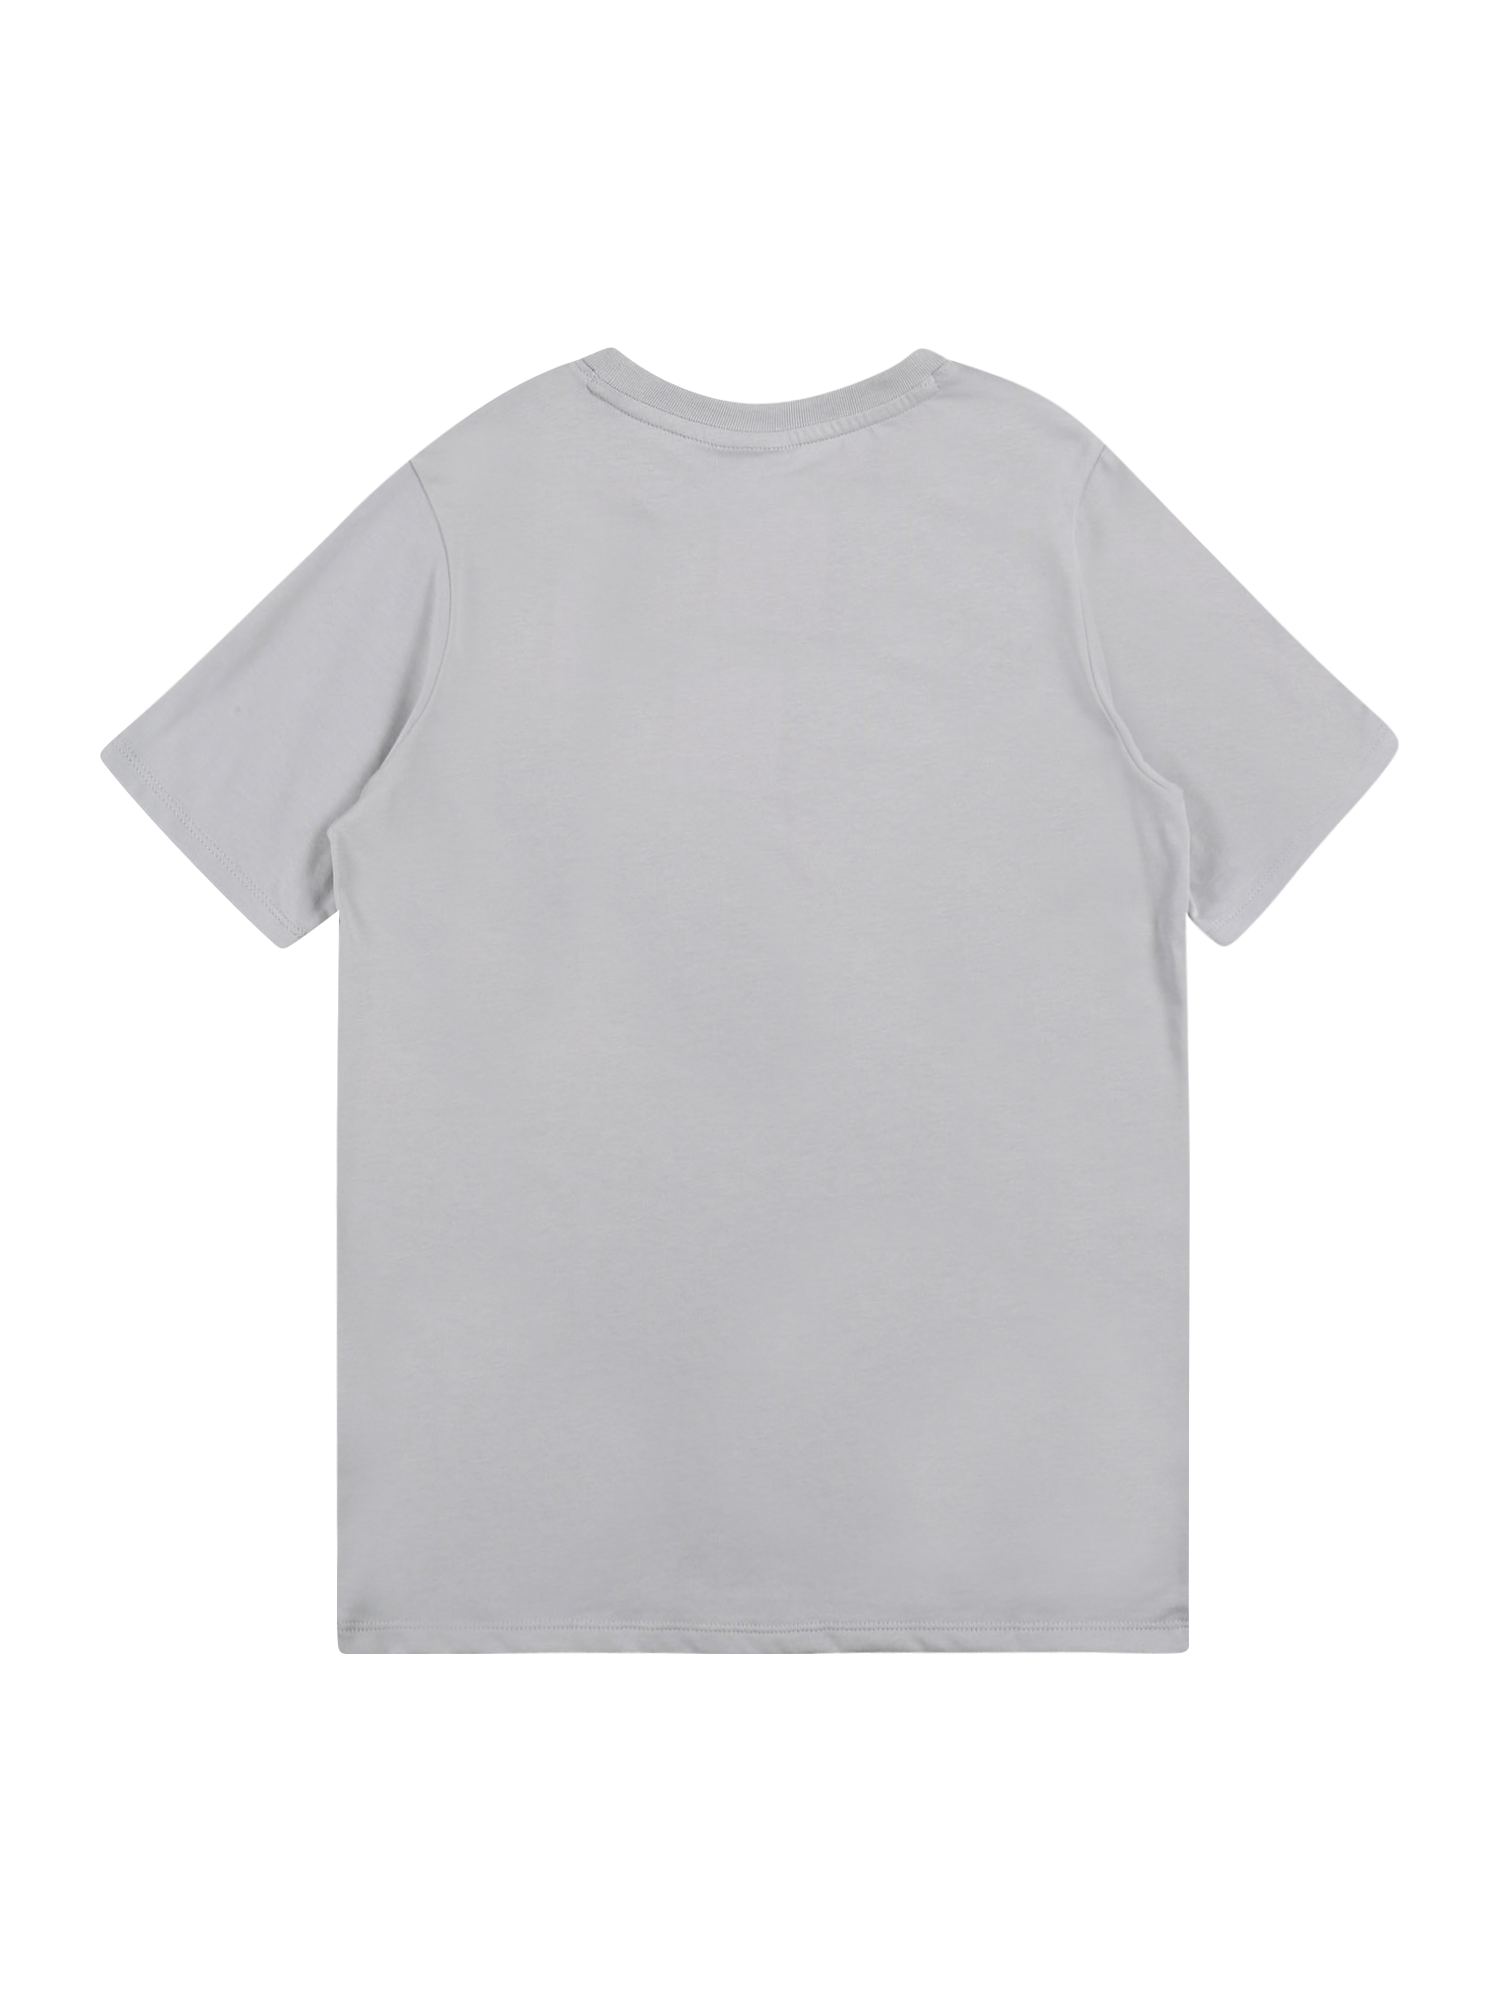 Chłopcy AaC75 Nike Sportswear Koszulka w kolorze Szarym 